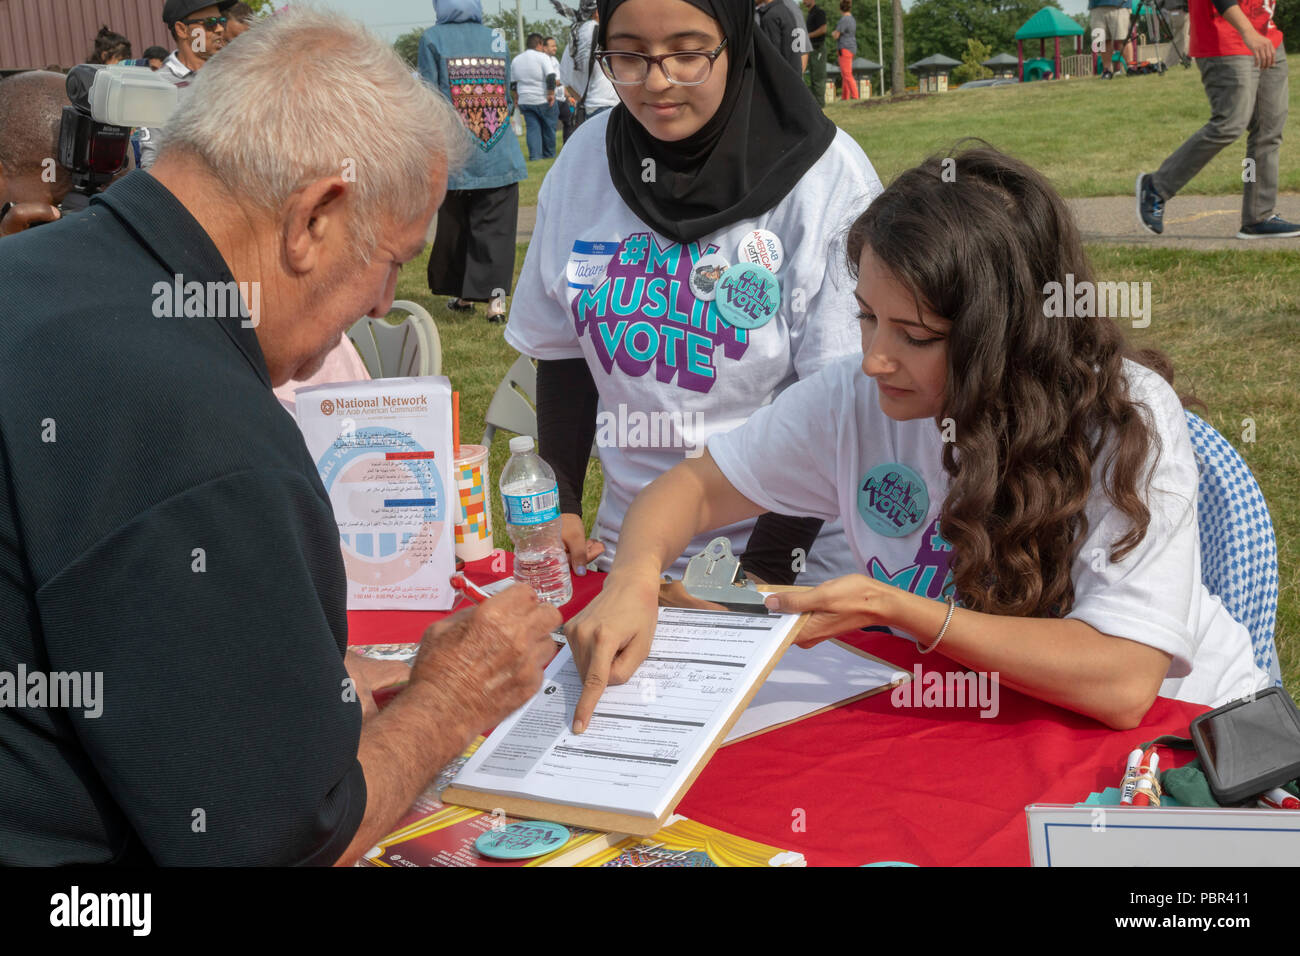 Dearborn, Michigan, USA - 29 juillet 2018 - Un homme s'inscrit pour voter à un Musulman Faire sortir le vote rally, parrainé par plusieurs organismes de la communauté musulmane. Le rallye les divertissements et les discours des musulmans et autres groupes de candidats politiques. Crédit : Jim West/Alamy Live News Banque D'Images